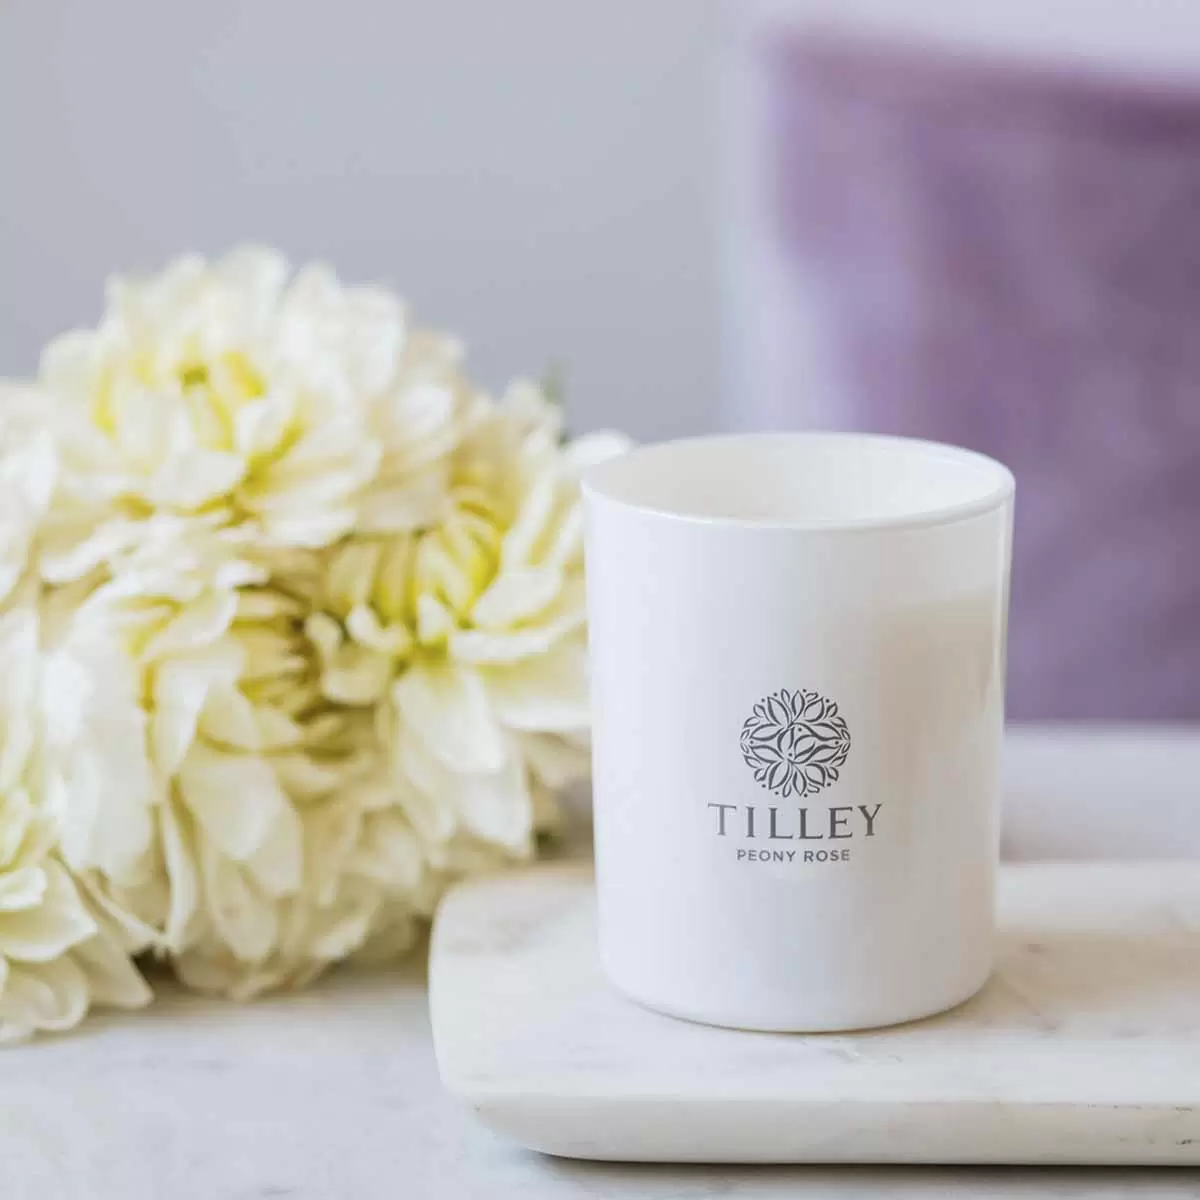 Tilley 微醺大豆香氛蠟燭2入組 塔斯馬尼亞薰衣草 + 牡丹玫瑰